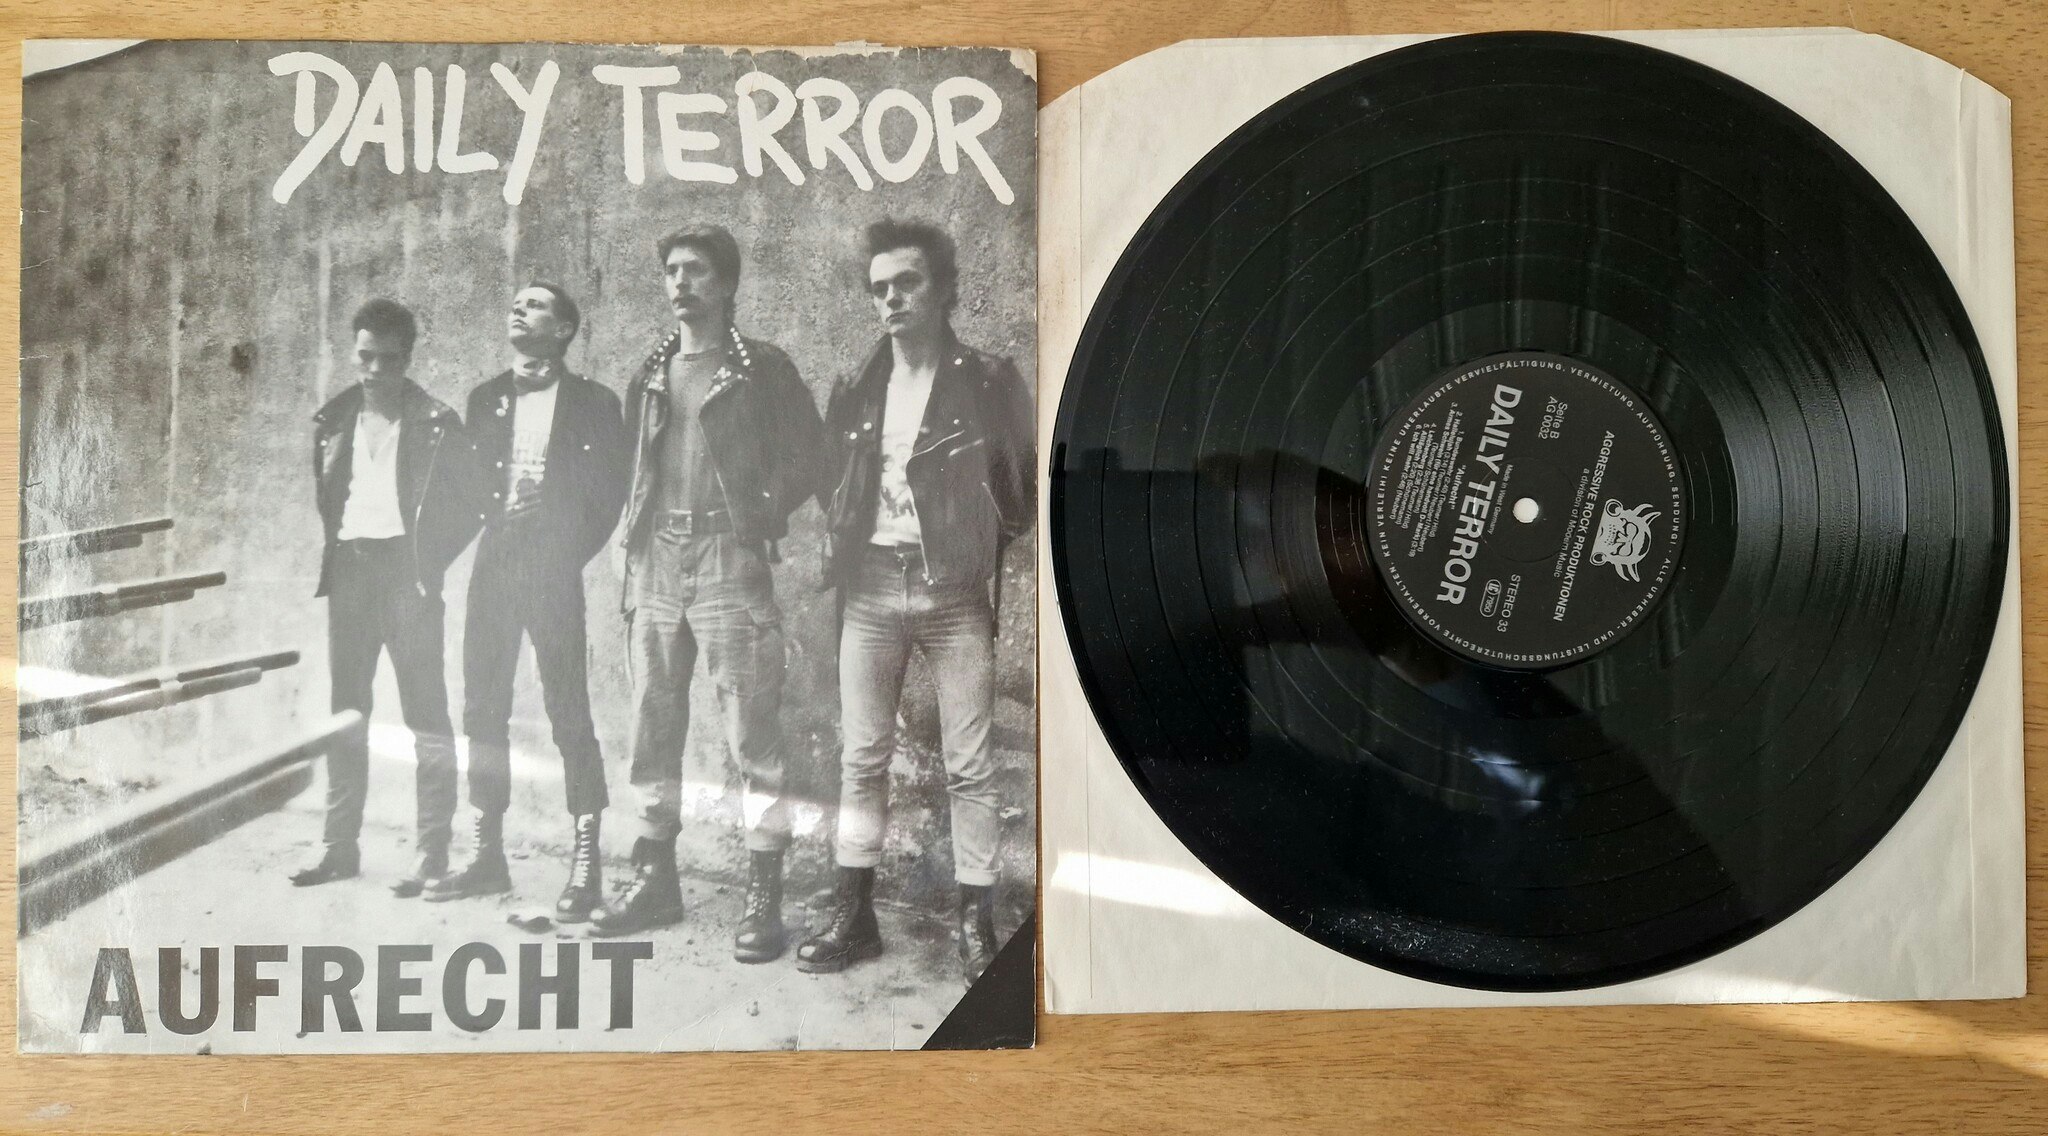 Daily Terror, Aufrecht. Vinyl LP